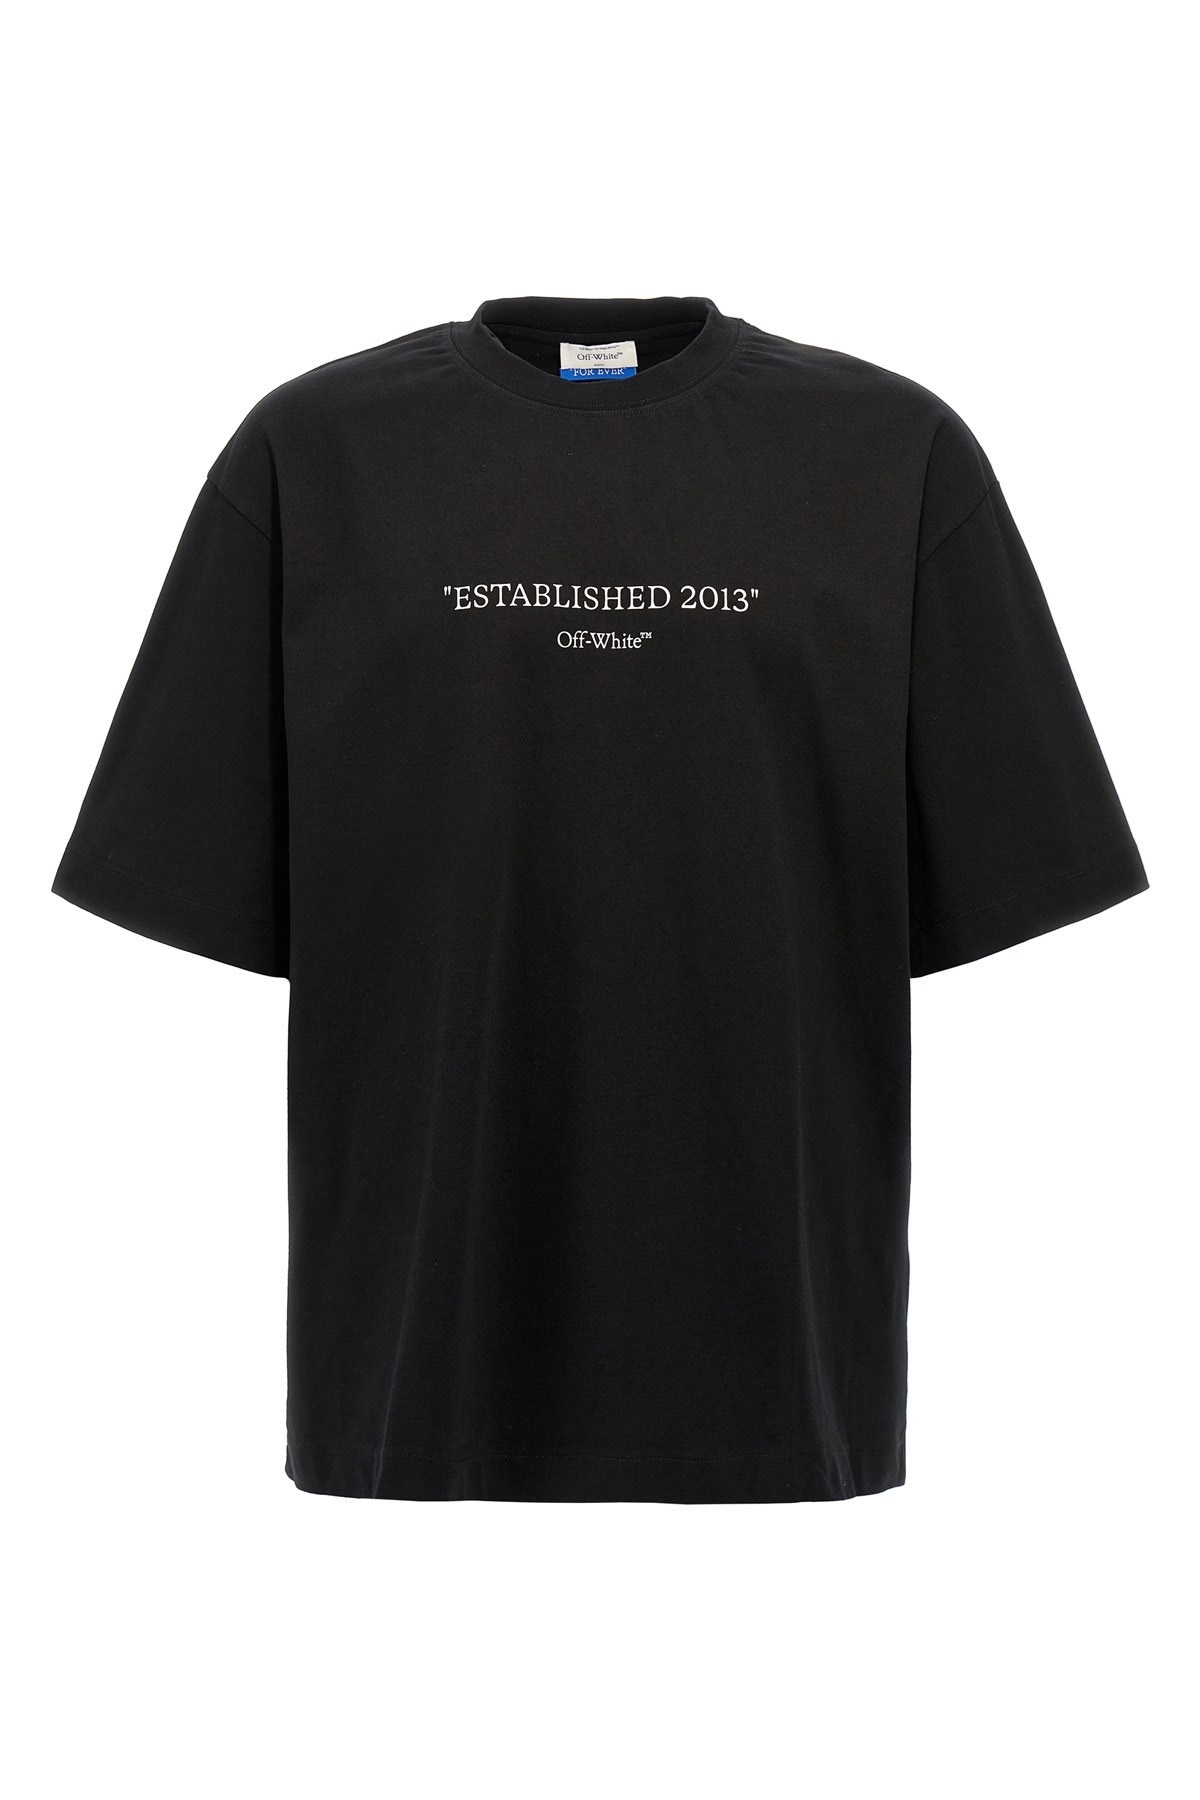 'Est 2013' T-shirt - 1